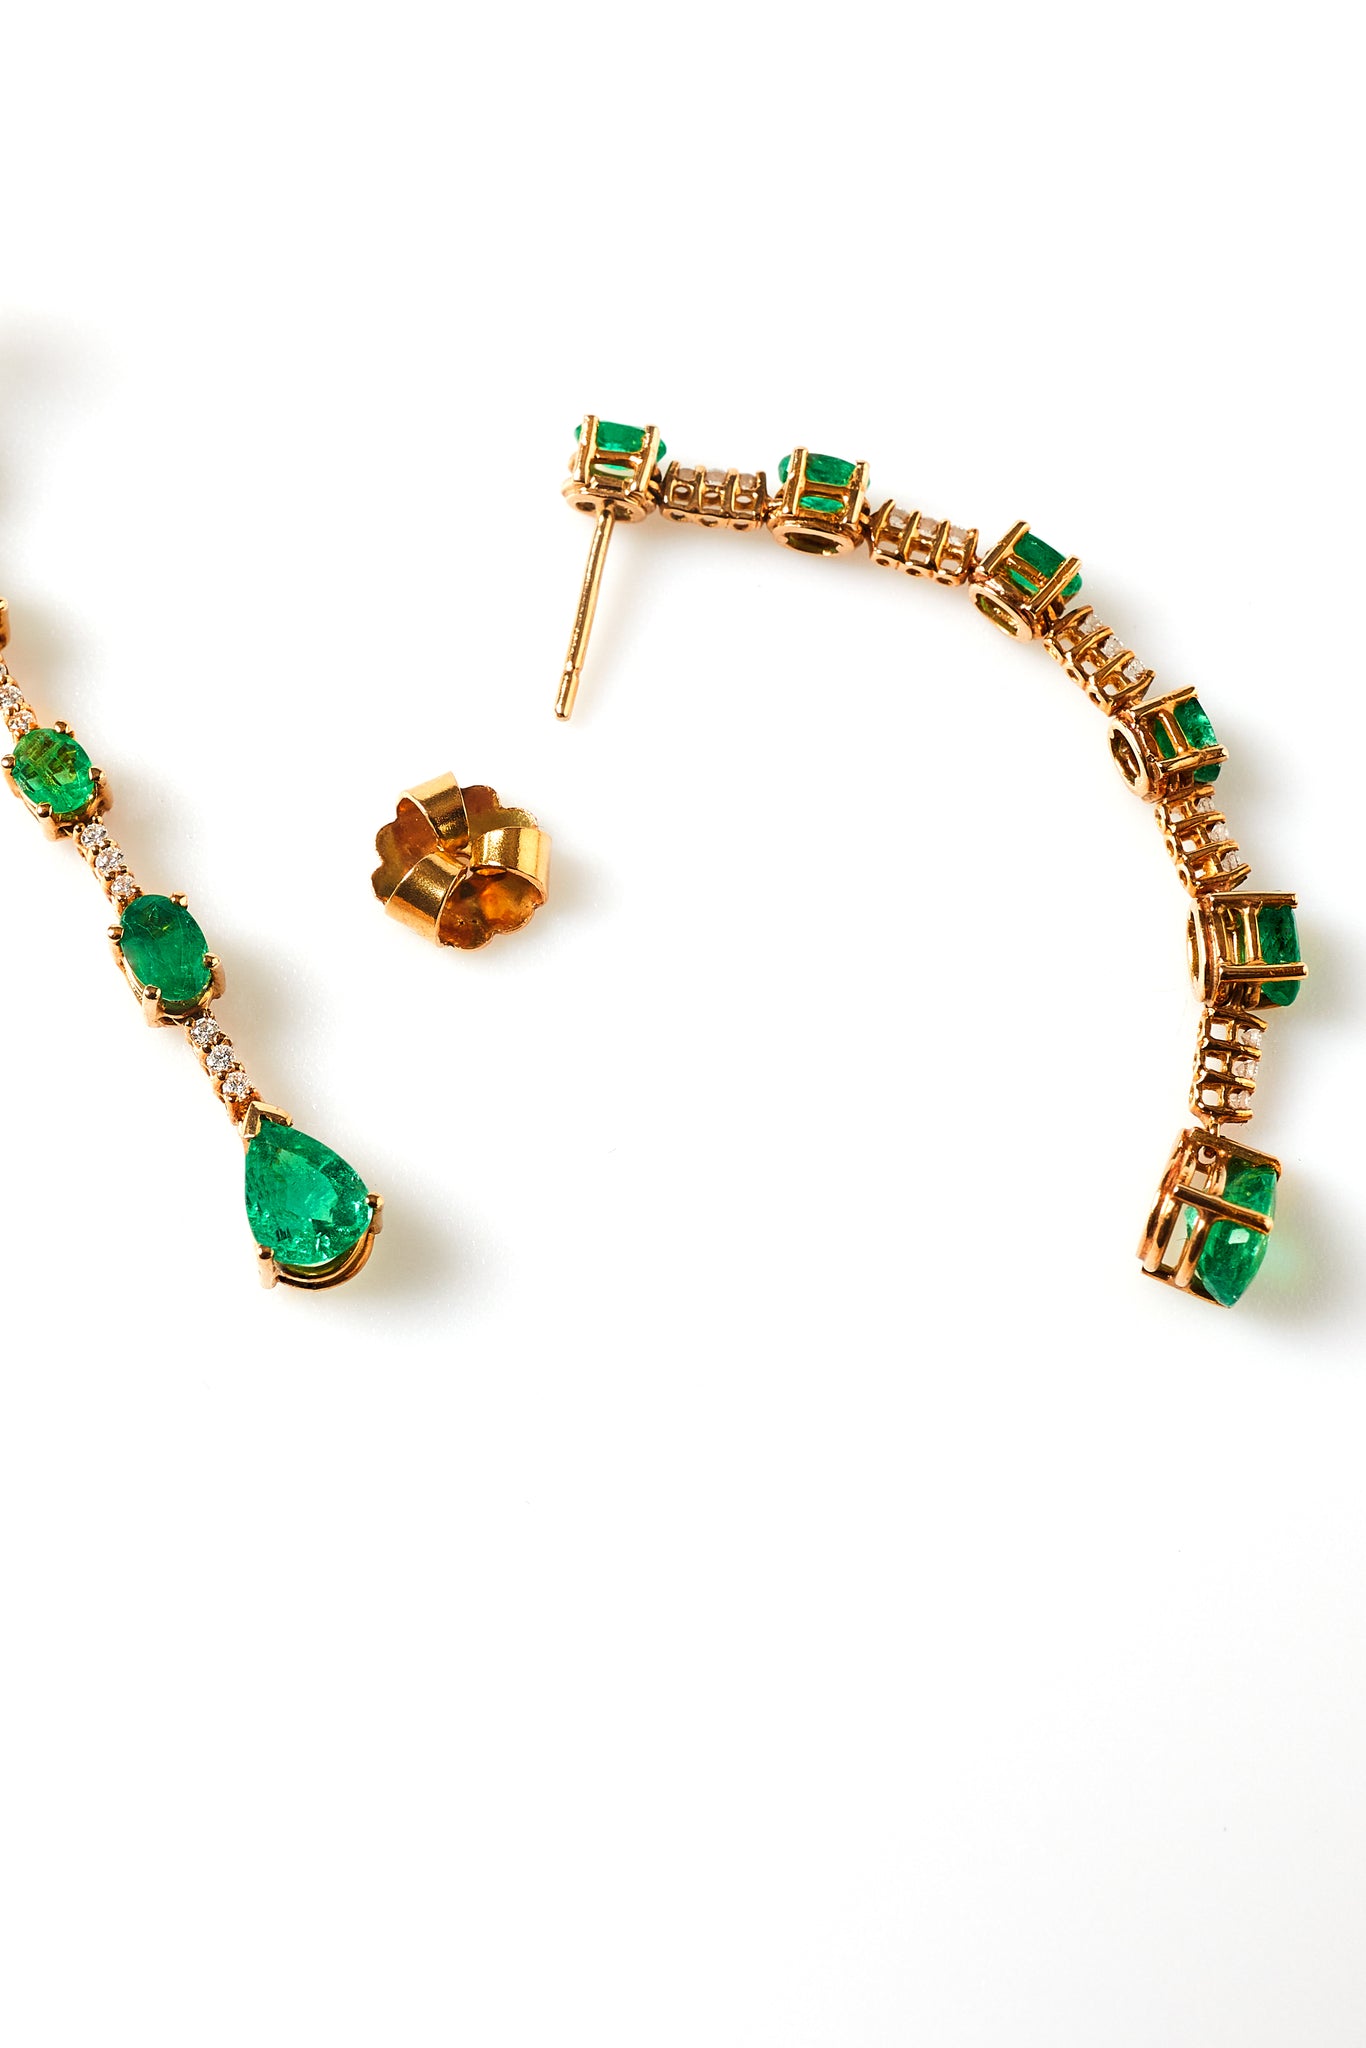 Majesty Emerald earrings